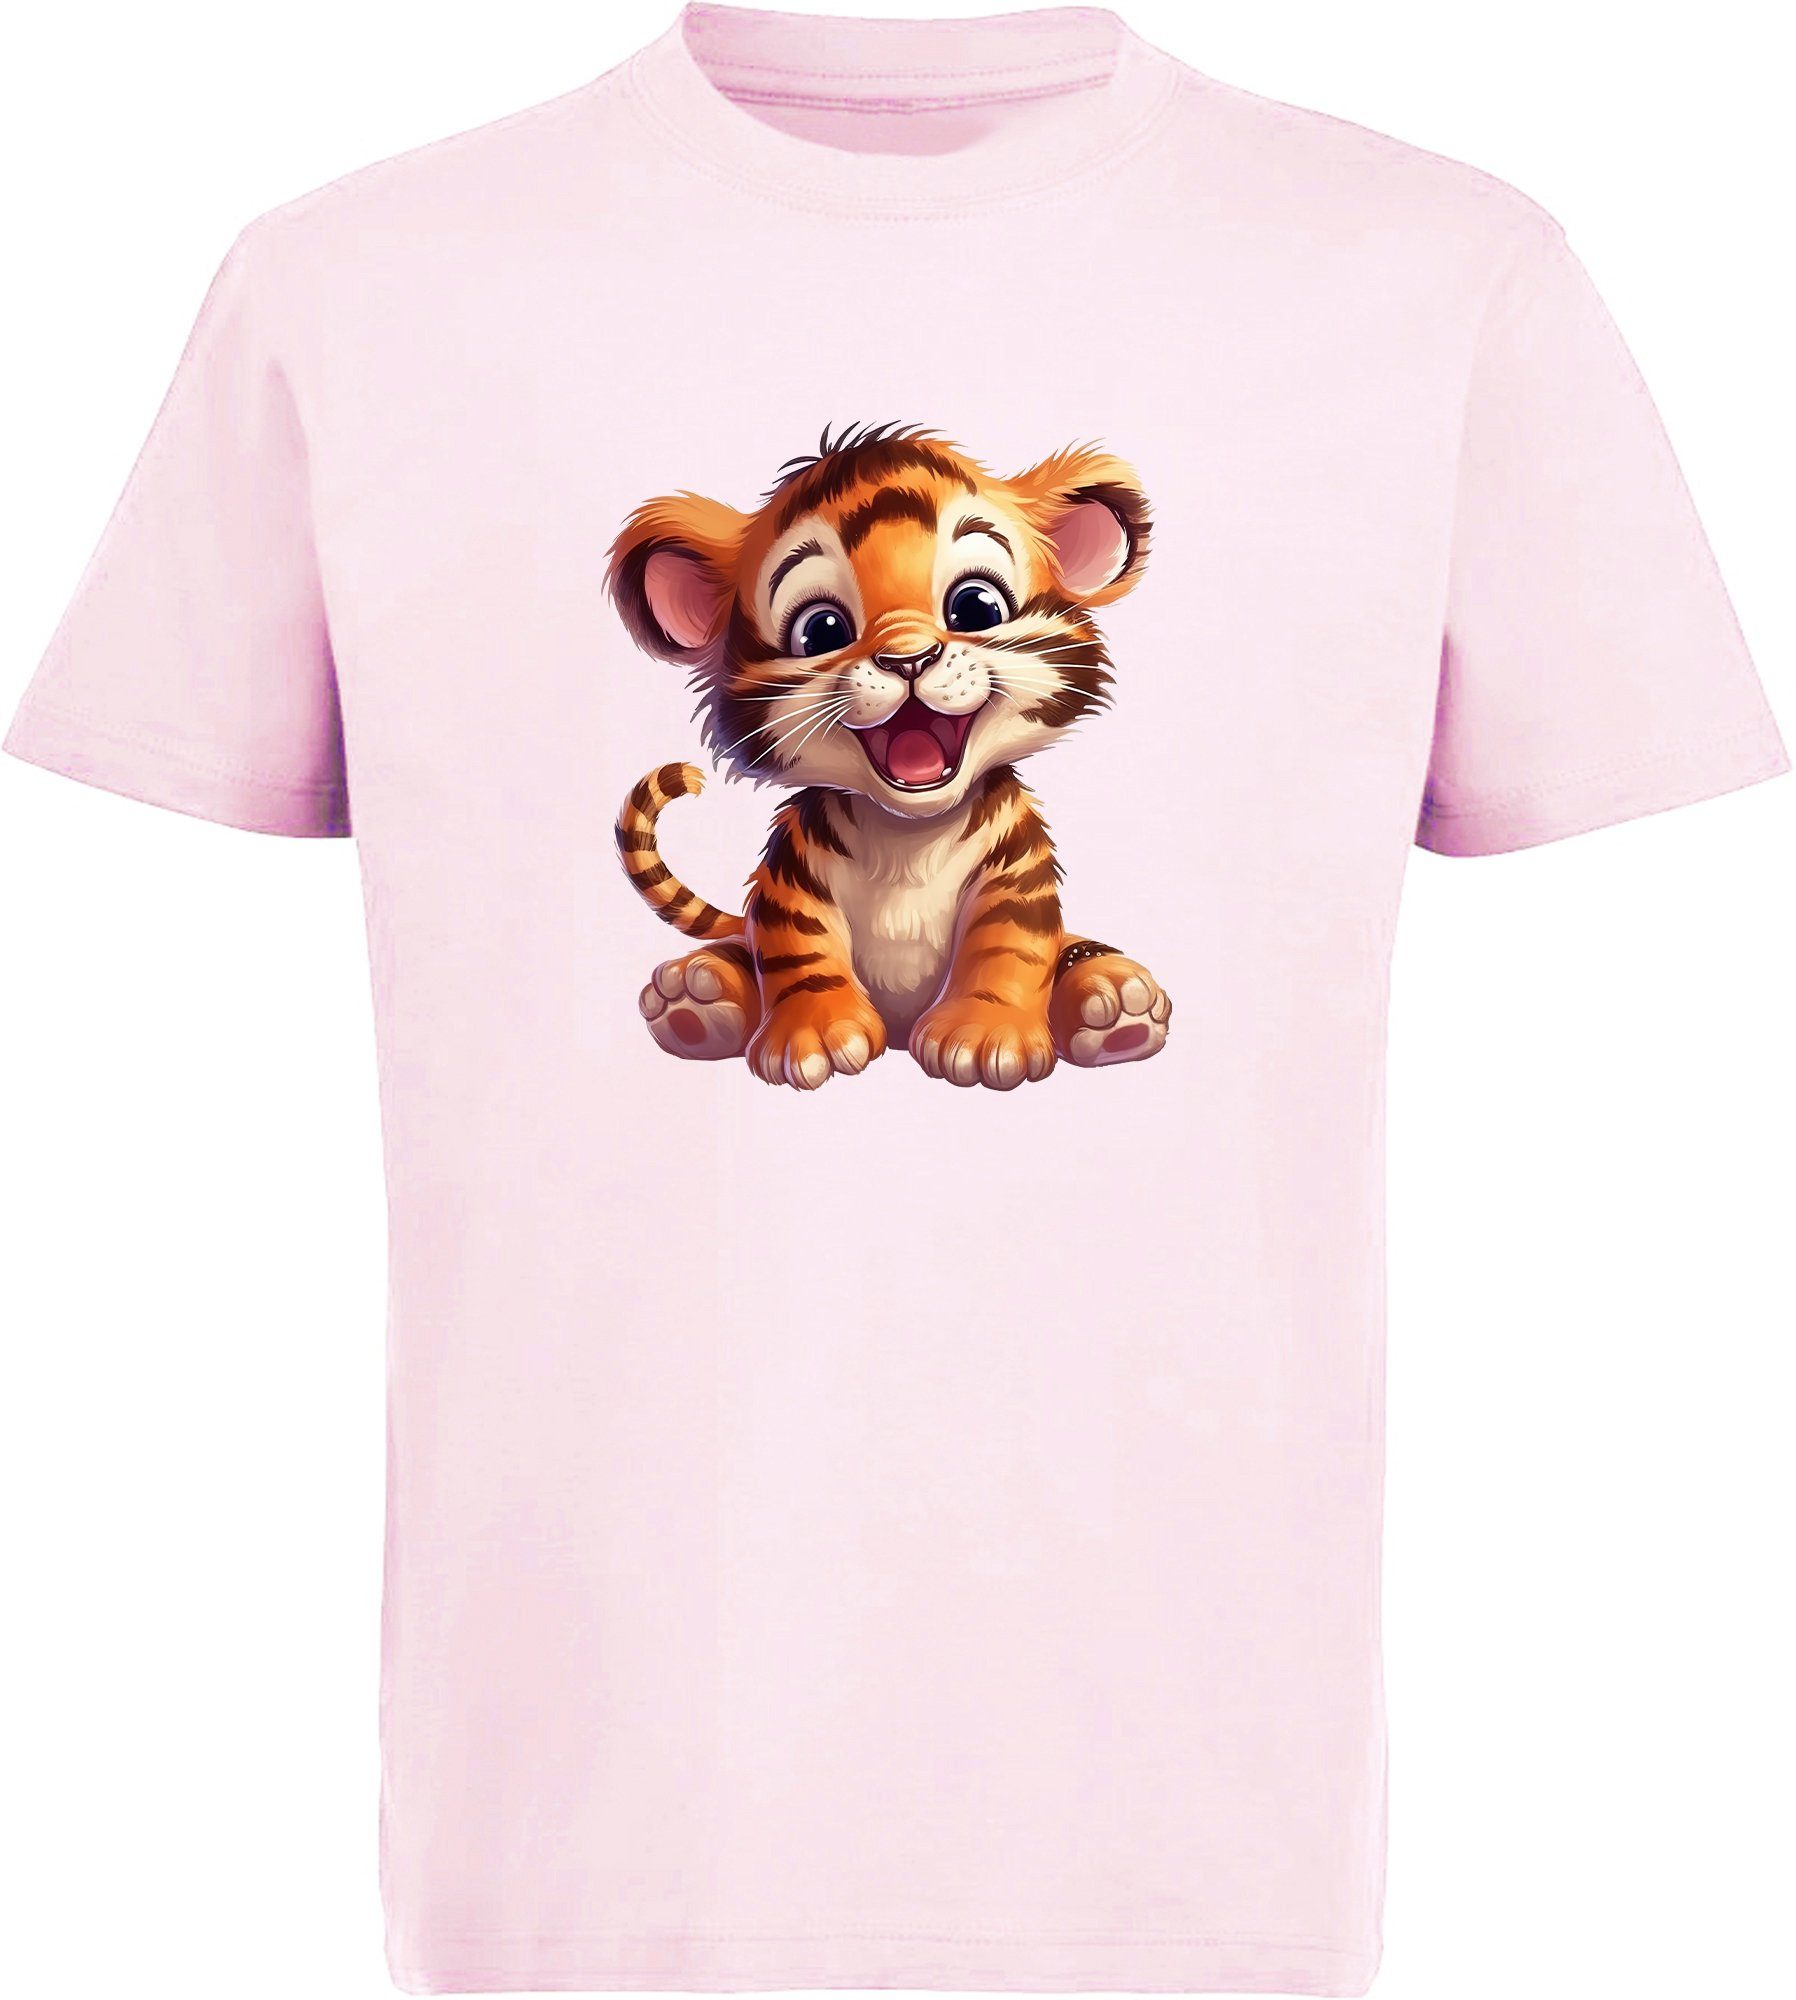 MyDesign24 T-Shirt Kinder Wildtier Print Shirt bedruckt - Baby Tiger Baumwollshirt mit Aufdruck, i266 rosa